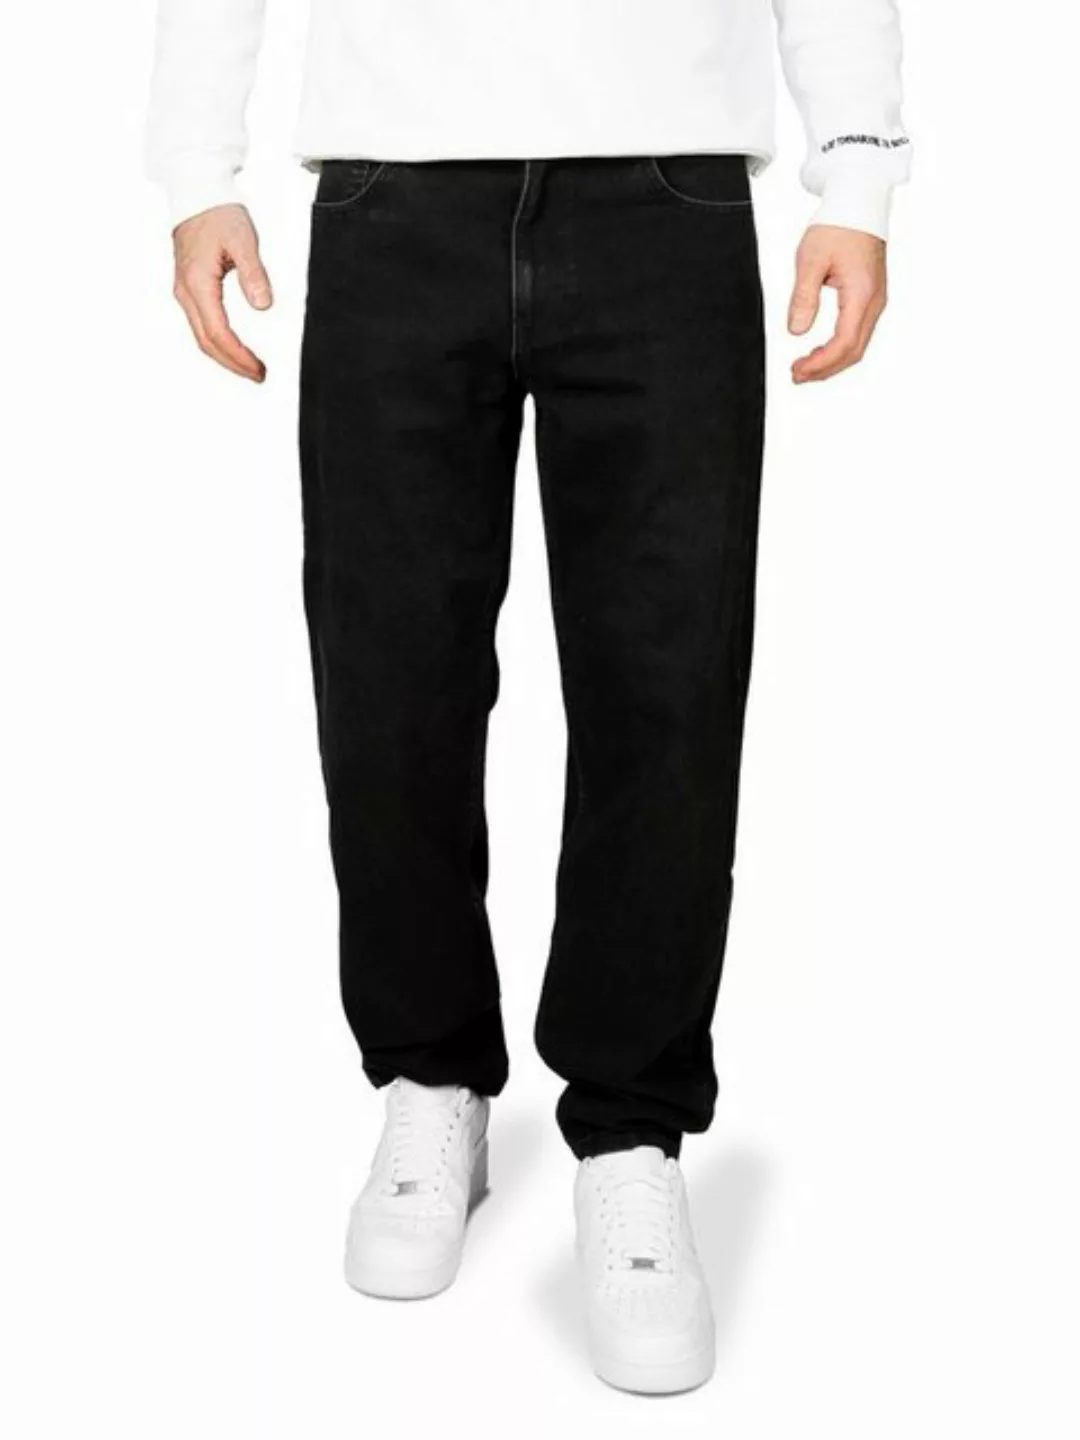 Pittman Loose-fit-Jeans Titan Herren Jeans bequeme Baumwoll Jeans günstig online kaufen